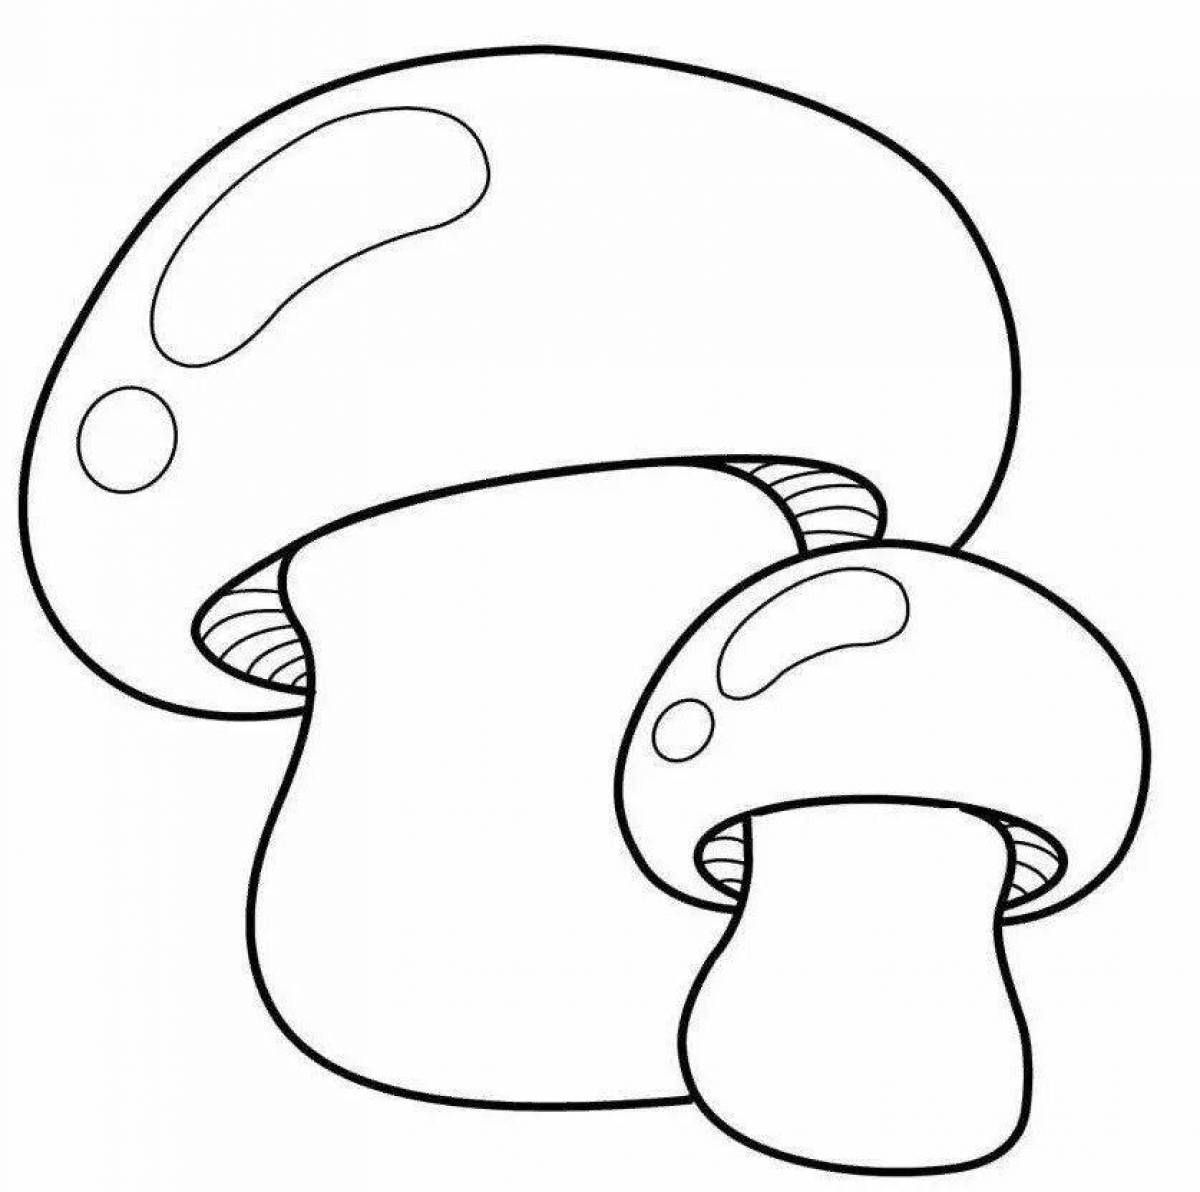 Coloring elegant porcini mushroom